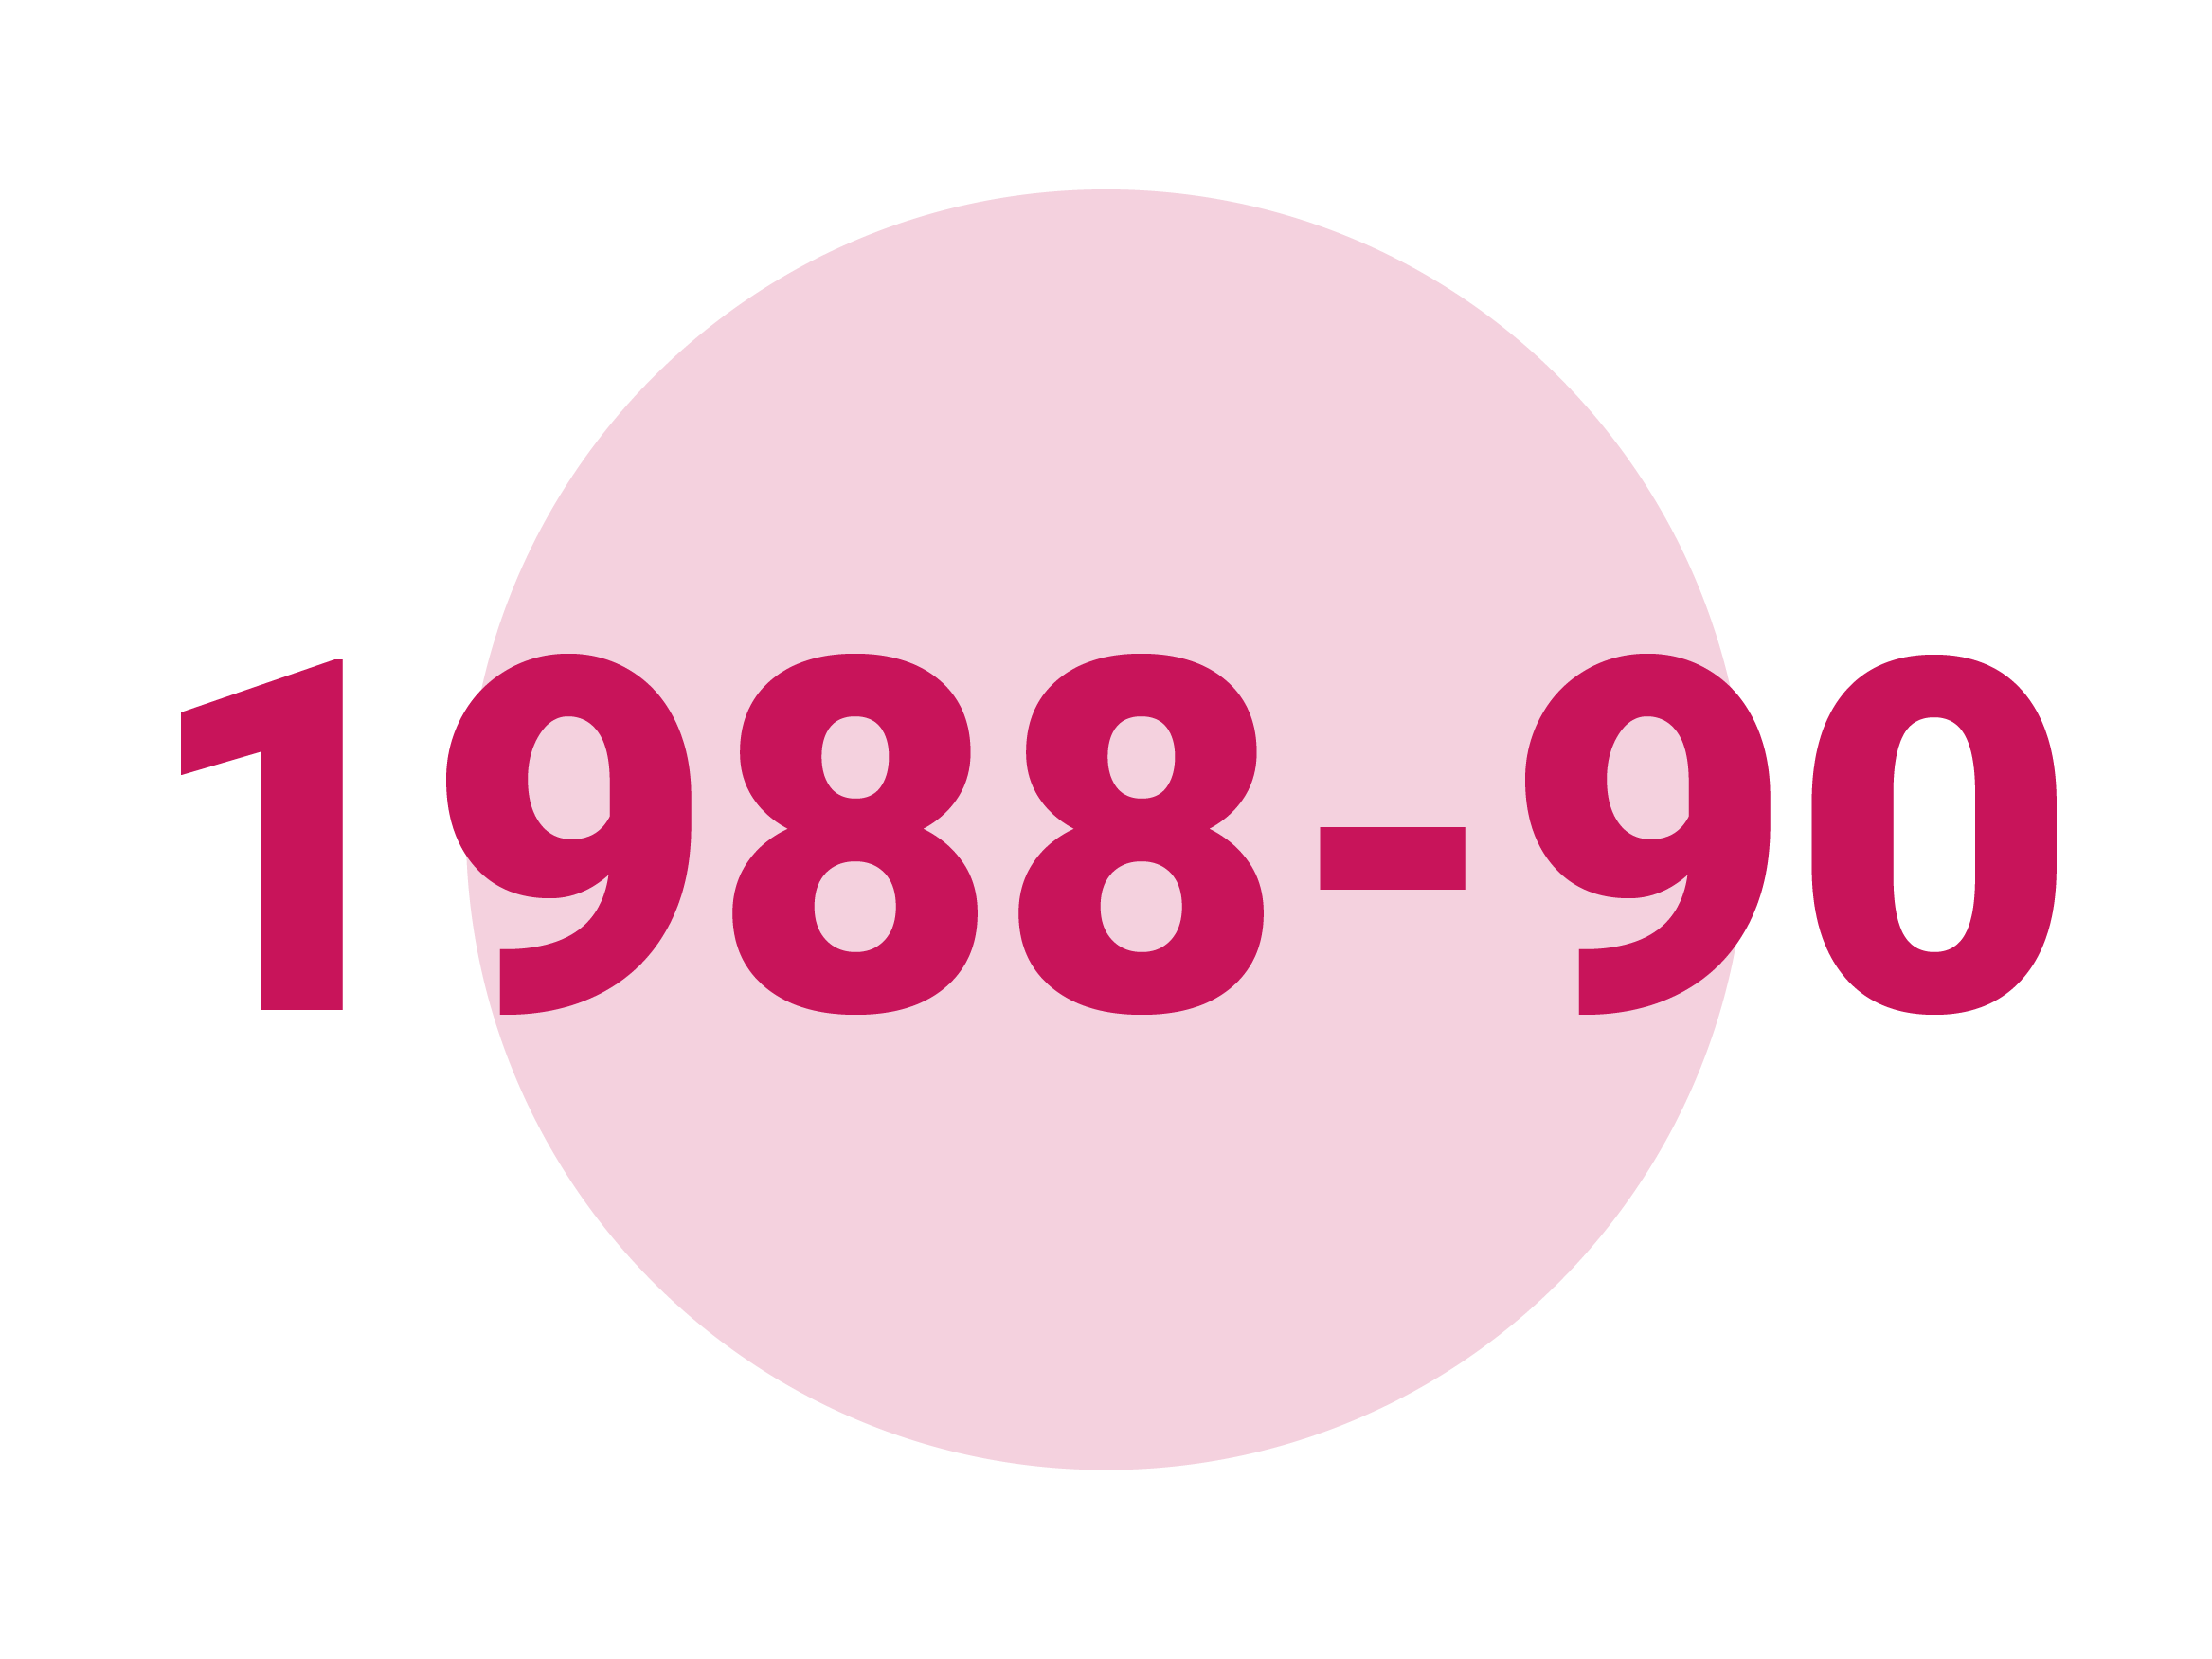 1988-90